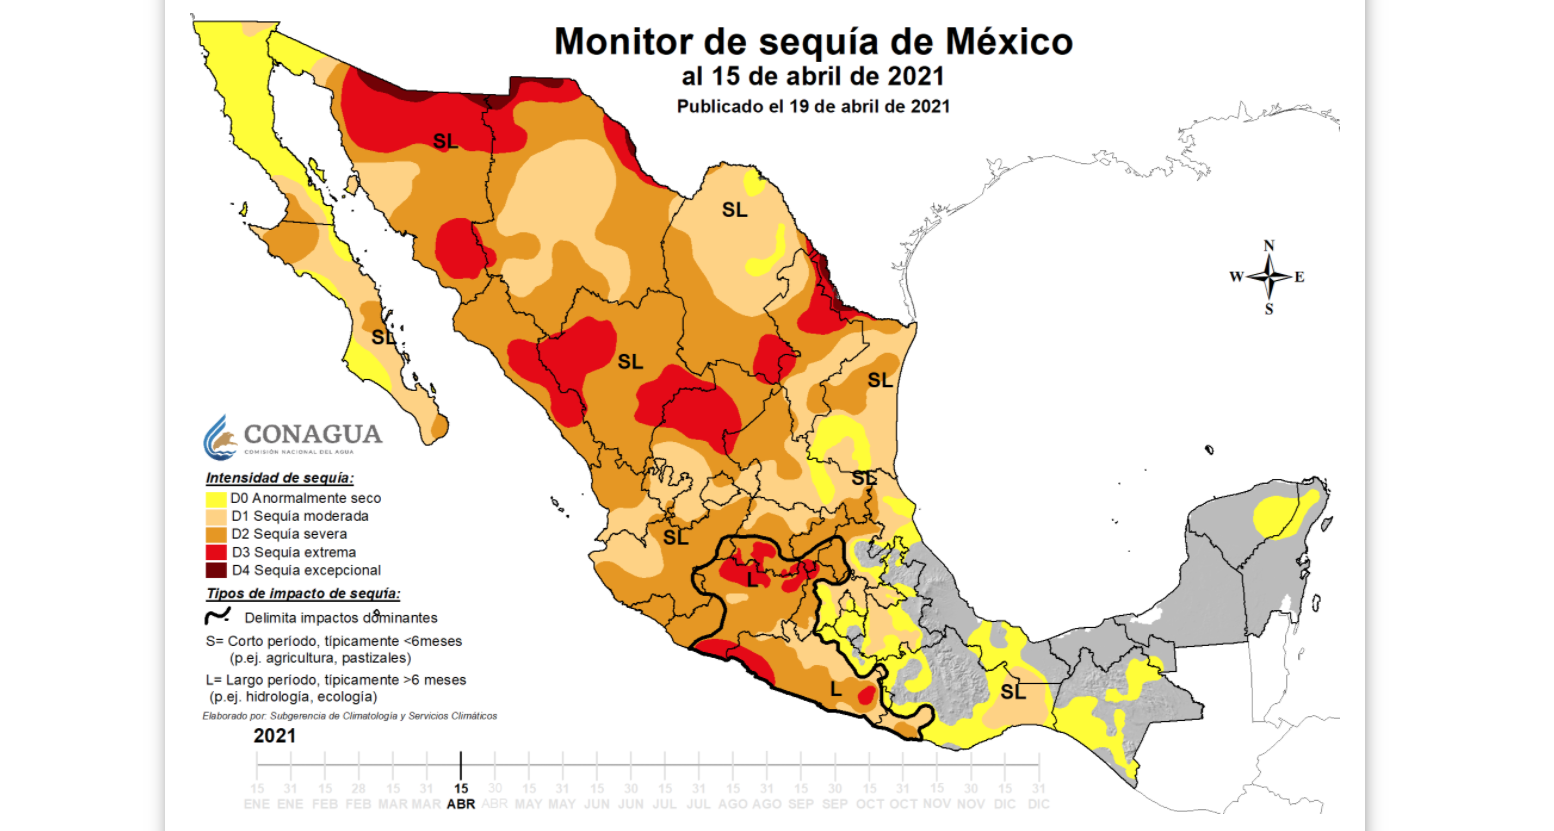 Entre la Sequía en México extrema y excepcional, el mapa mostró las regiones que abarcan los siguientes estados: Sonora, Chihuahua, Coahuila, Nuevo León, Sinaloa, Durango, Zacatecas, Guerrero y Michoacán Foto: (Conagua SMN)